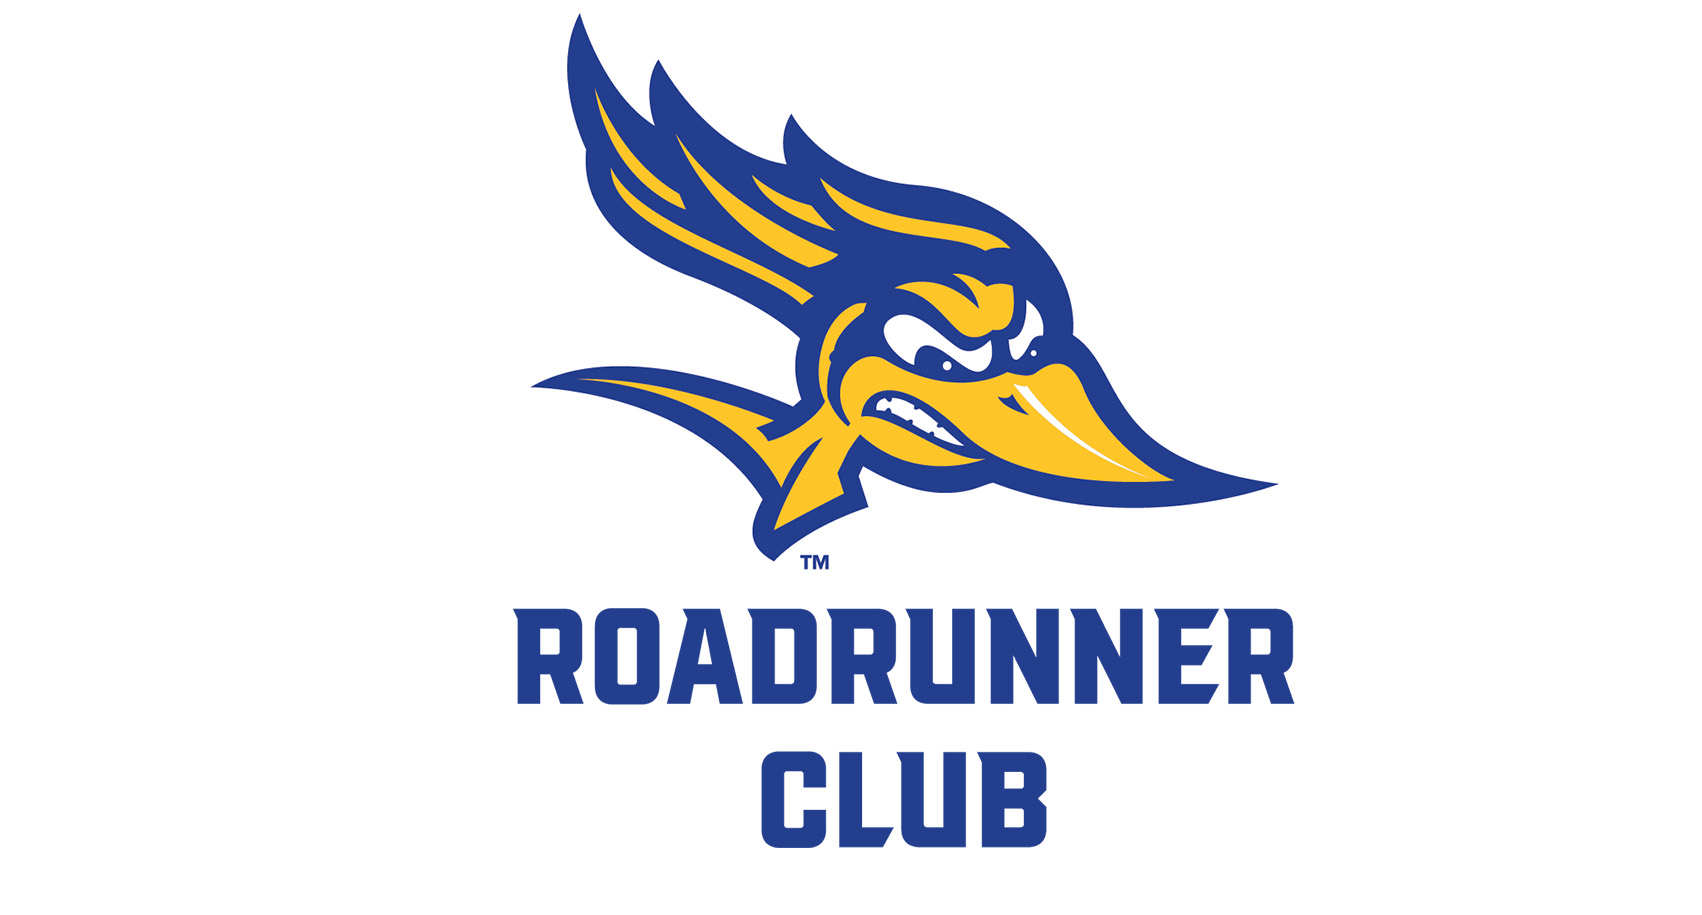 Brand Style Guide: Roadrunner Club Logo